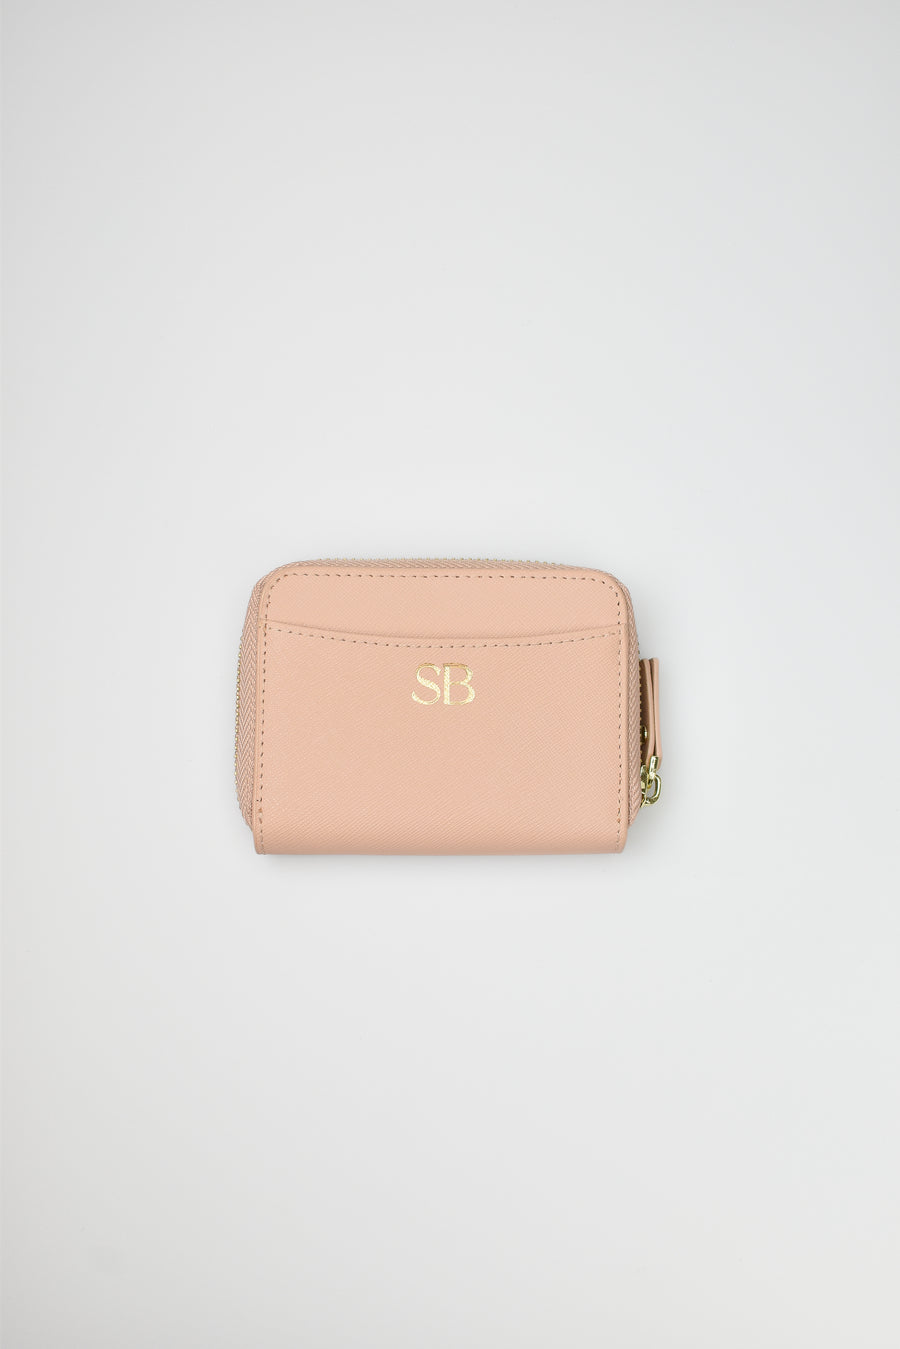 Personalised Leather Mini Zipper Wallet - Sandy Beige